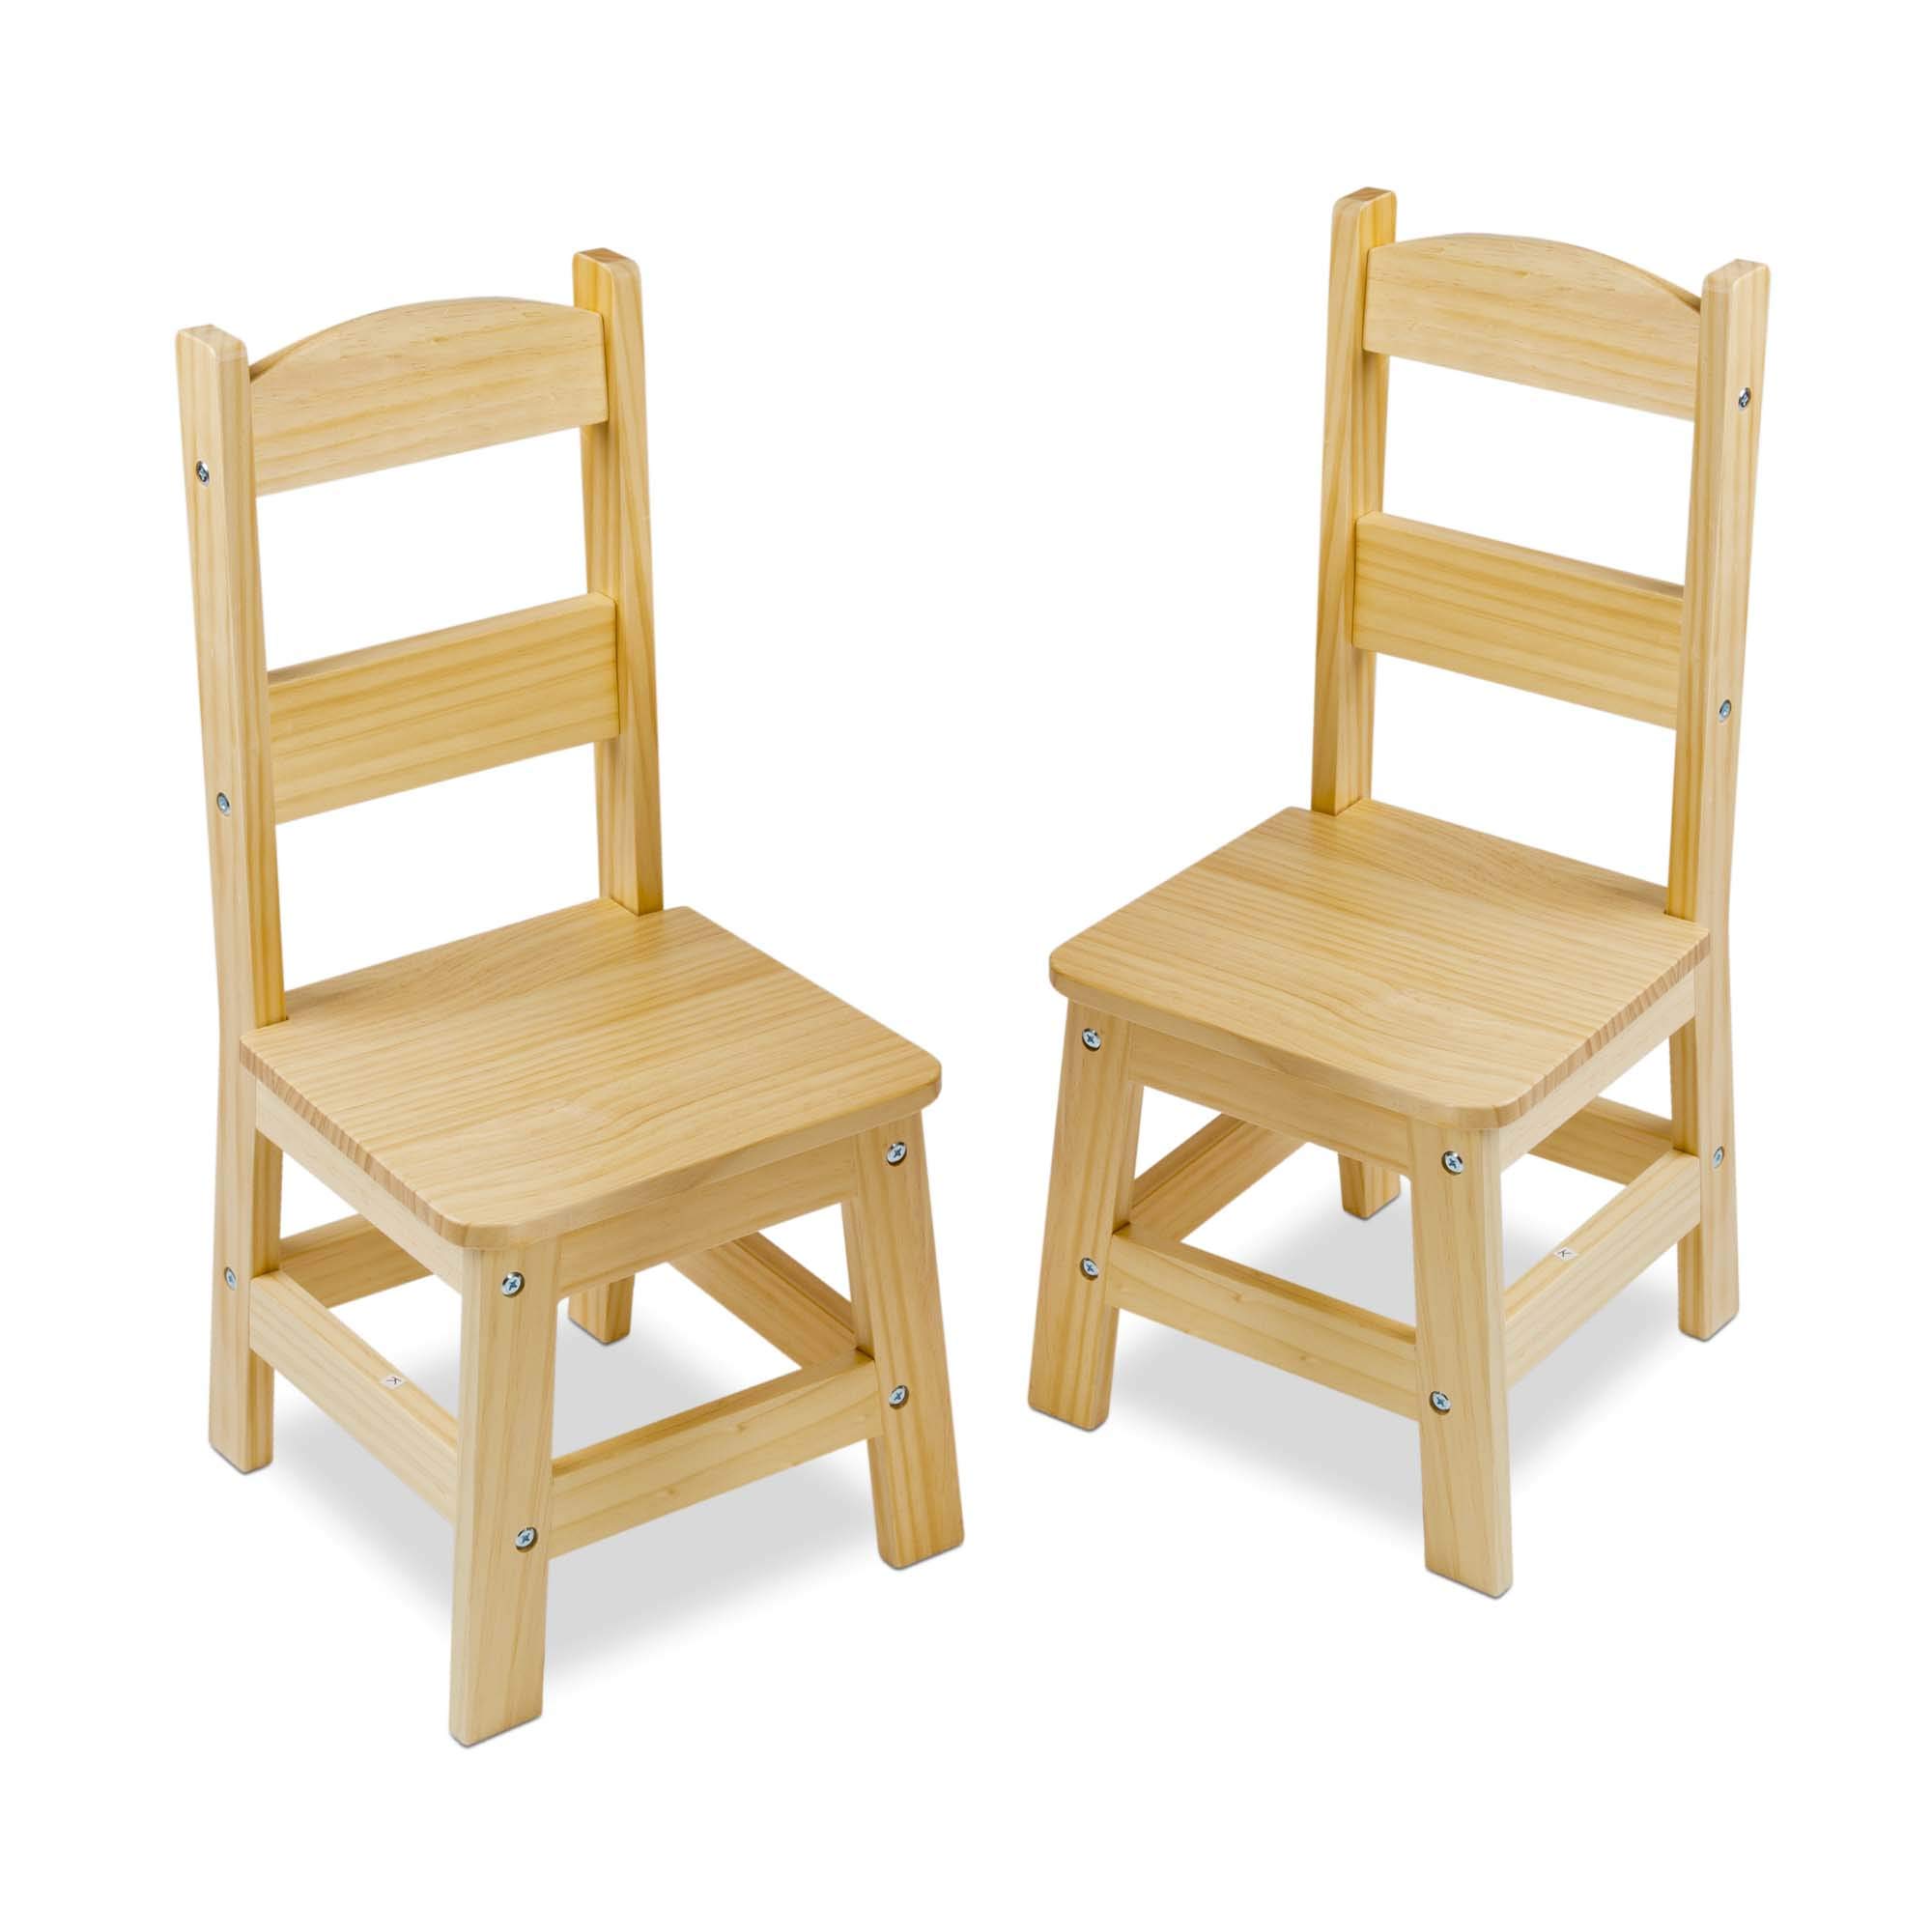 Картинка стул. Melissa&Doug стул. Деревянный стульчик. Детские деревянные стульчики. Детский деревянный стул.